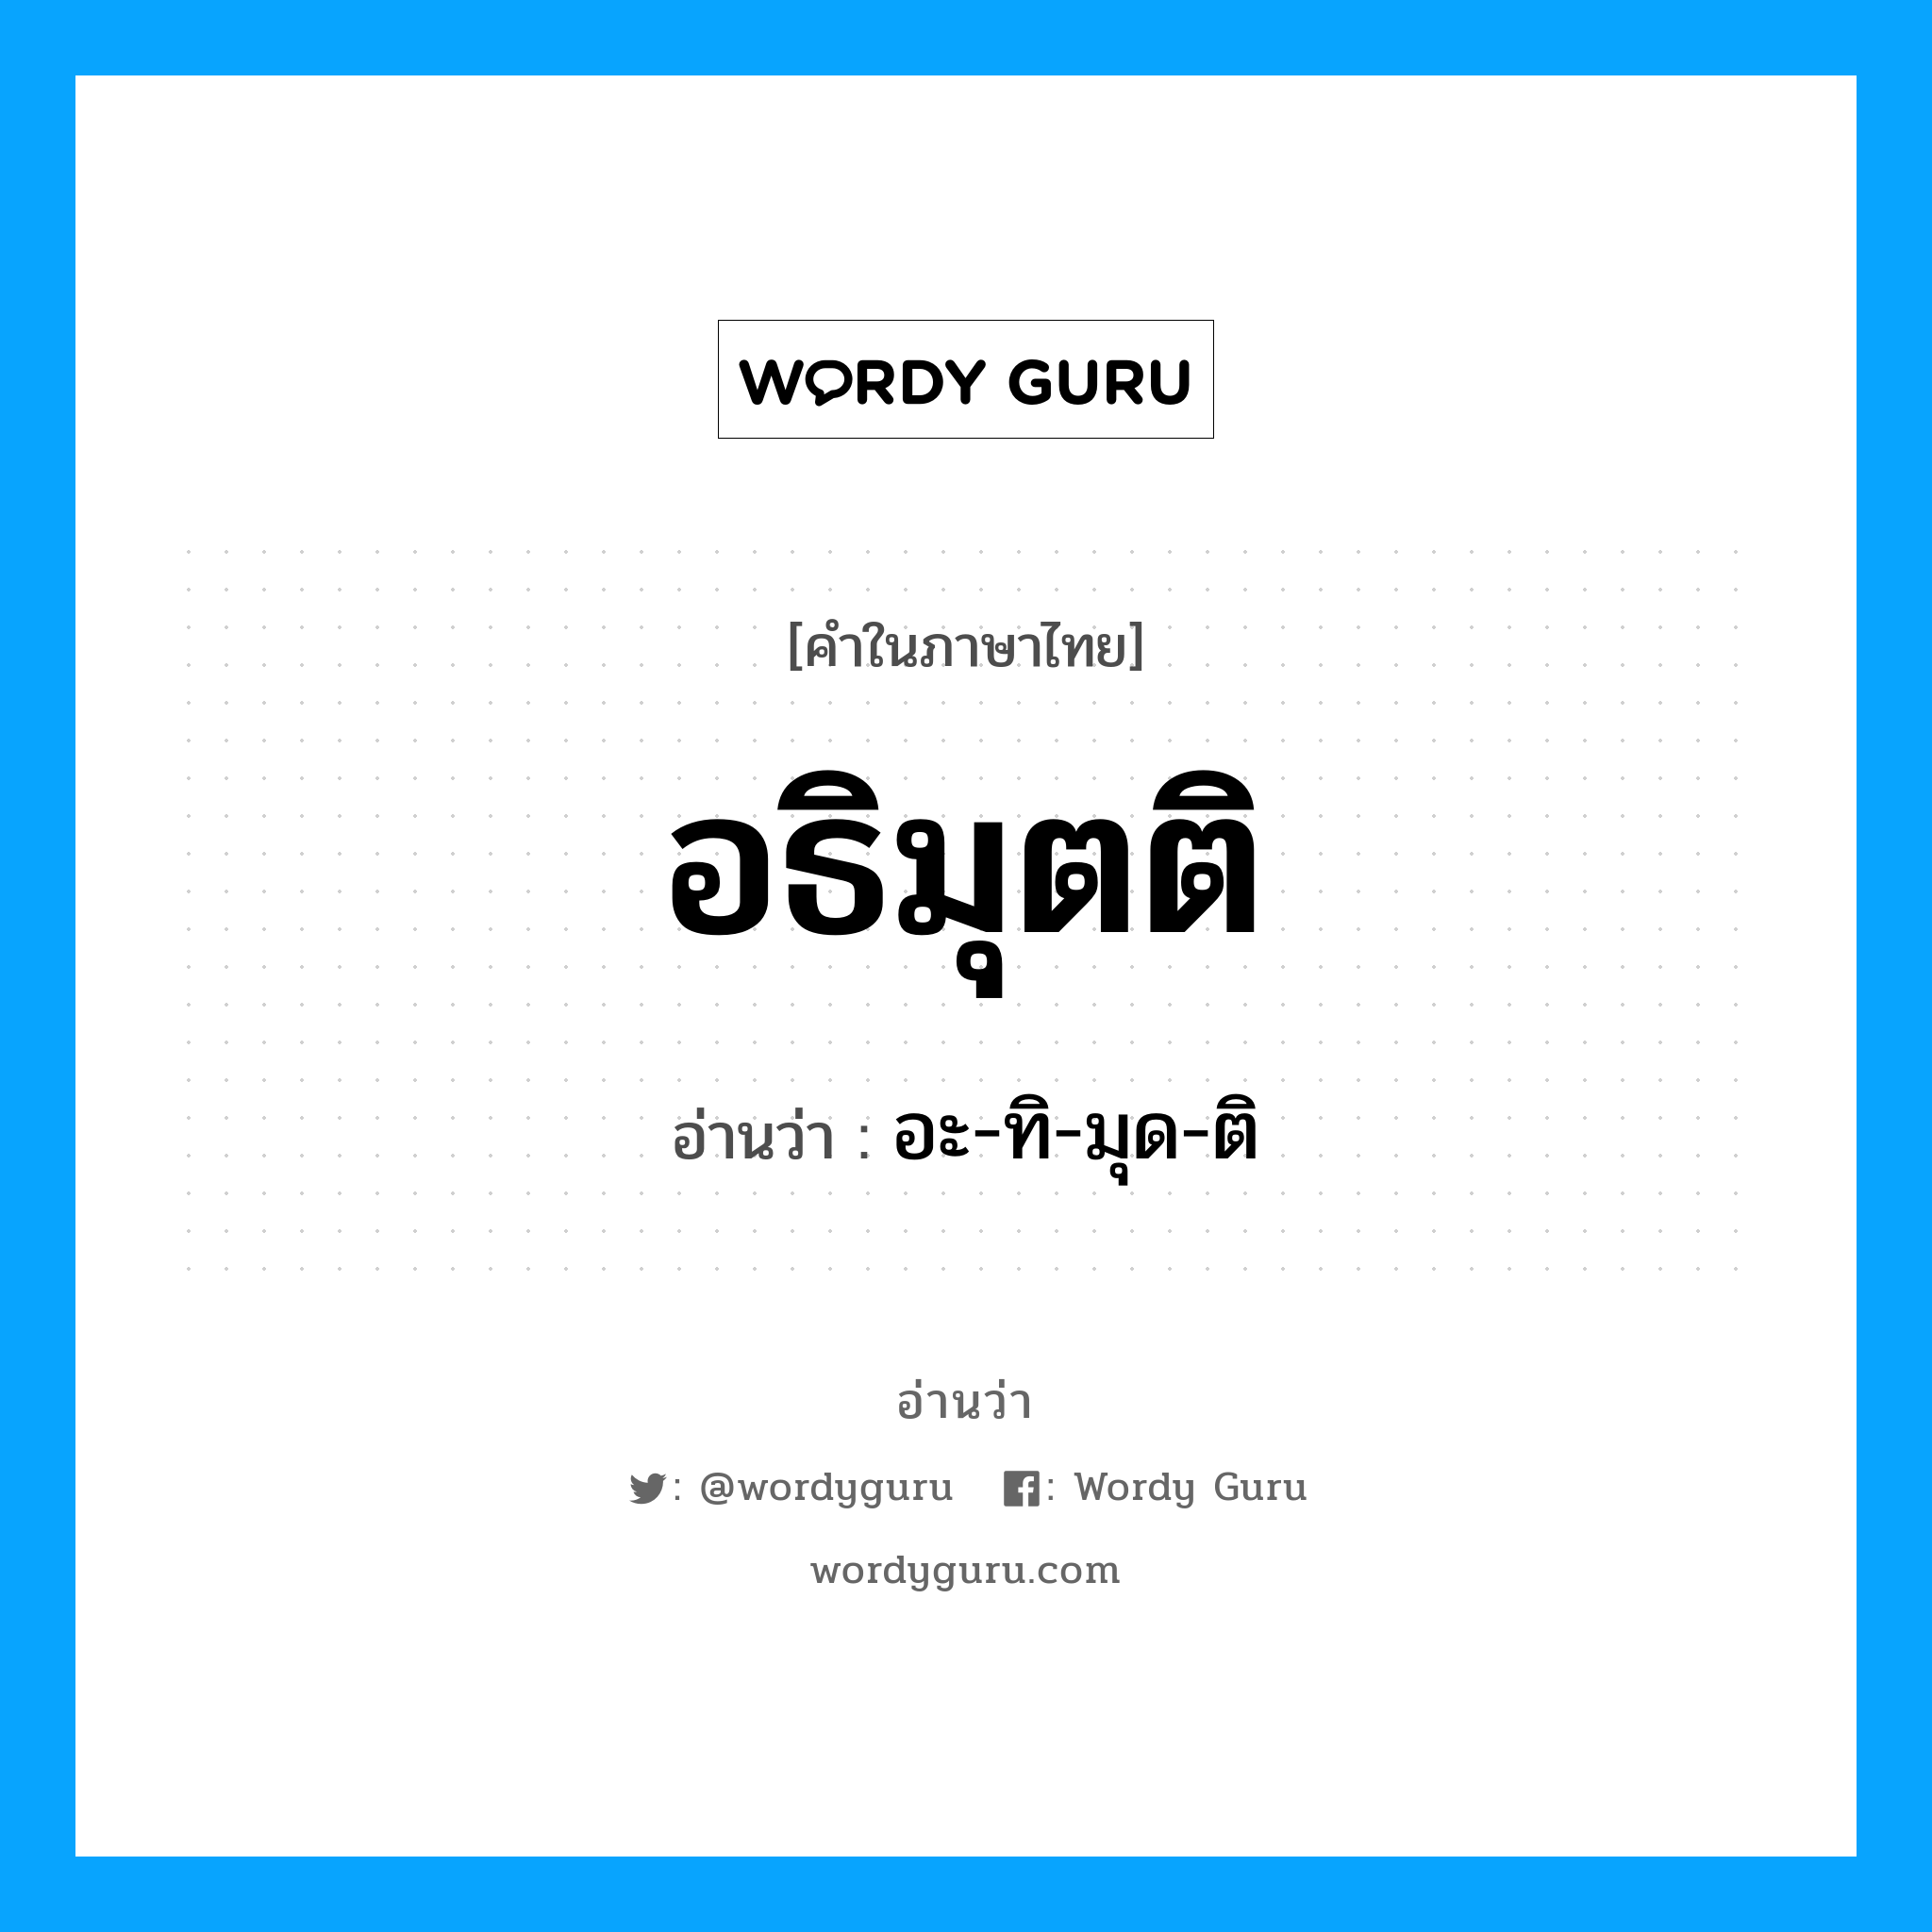 อะ-ทิ-มุด-ติ เป็นคำอ่านของคำไหน?, คำในภาษาไทย อะ-ทิ-มุด-ติ อ่านว่า อธิมุตติ